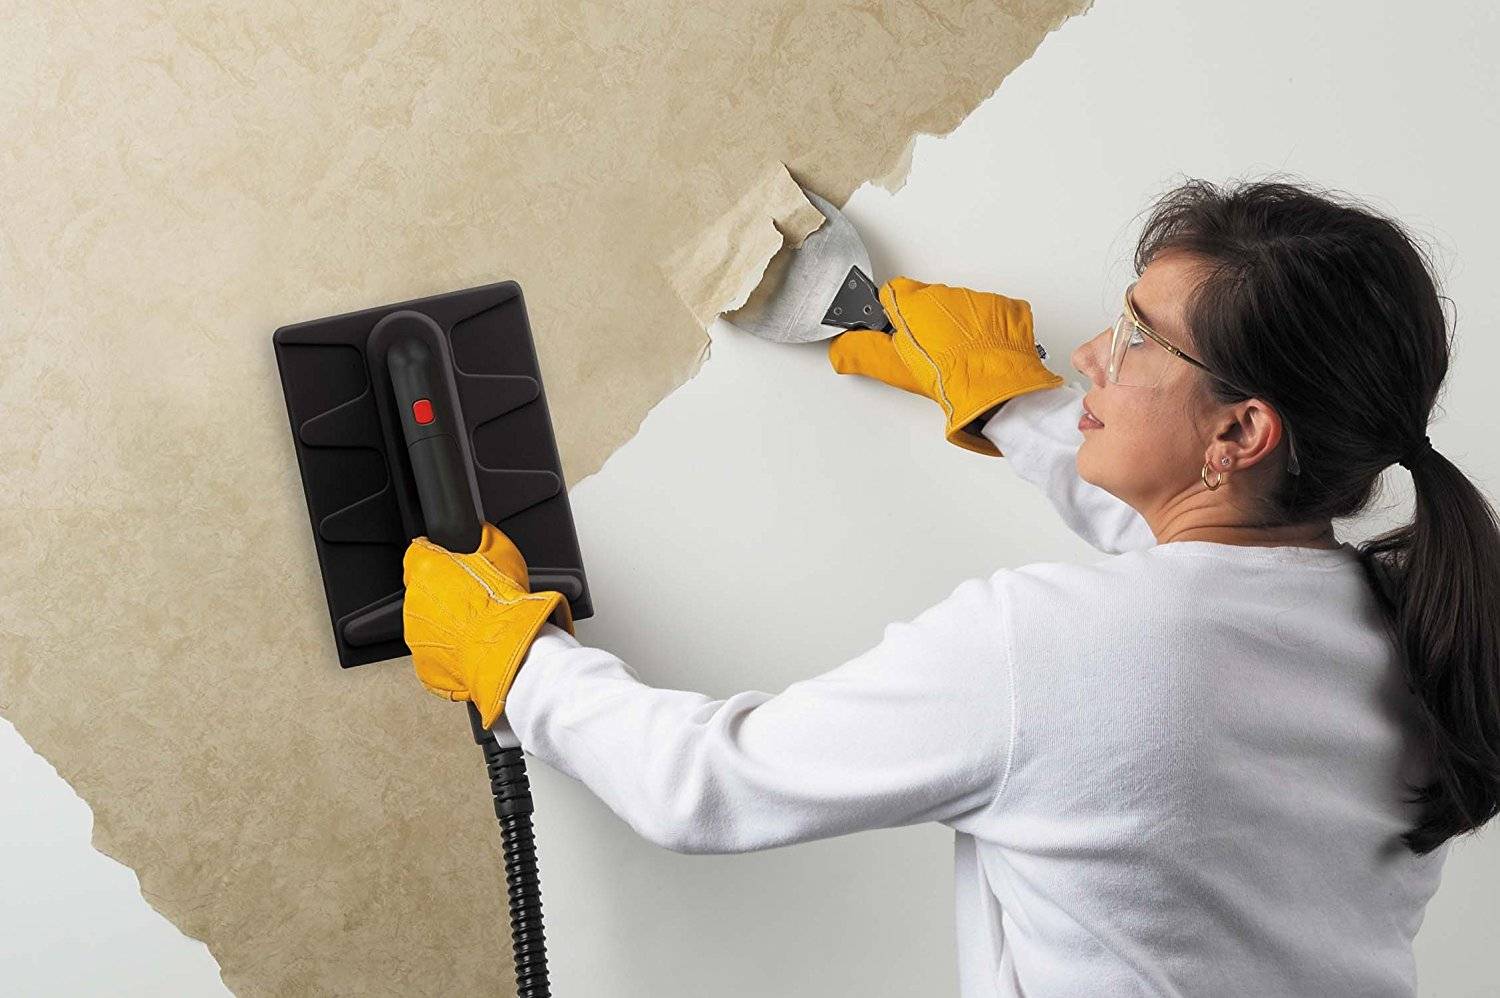 Как снять обои со стен в домашних условиях быстро, если они приклеены крепко: средство для снятия старых виниловых или бумажных обоев, варианты, как быстро отдирать своими руками